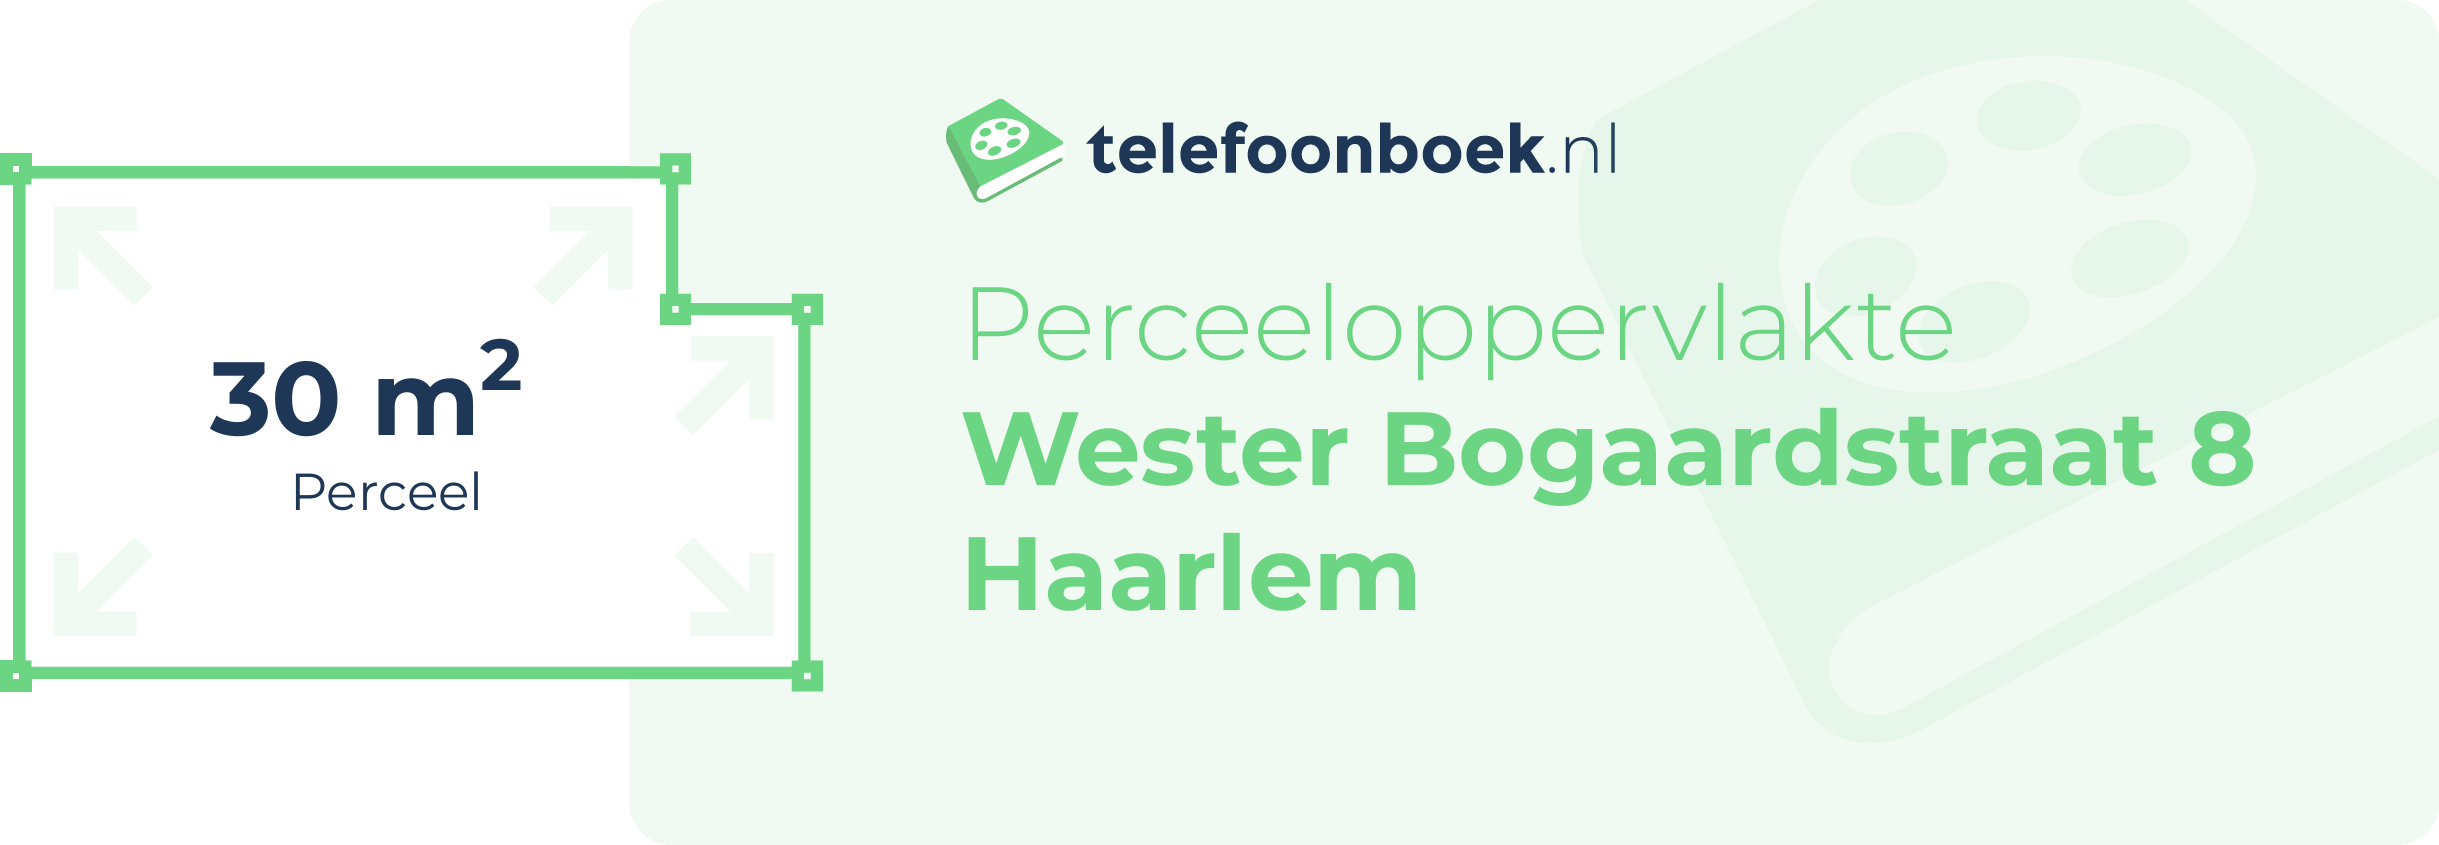 Perceeloppervlakte Wester Bogaardstraat 8 Haarlem